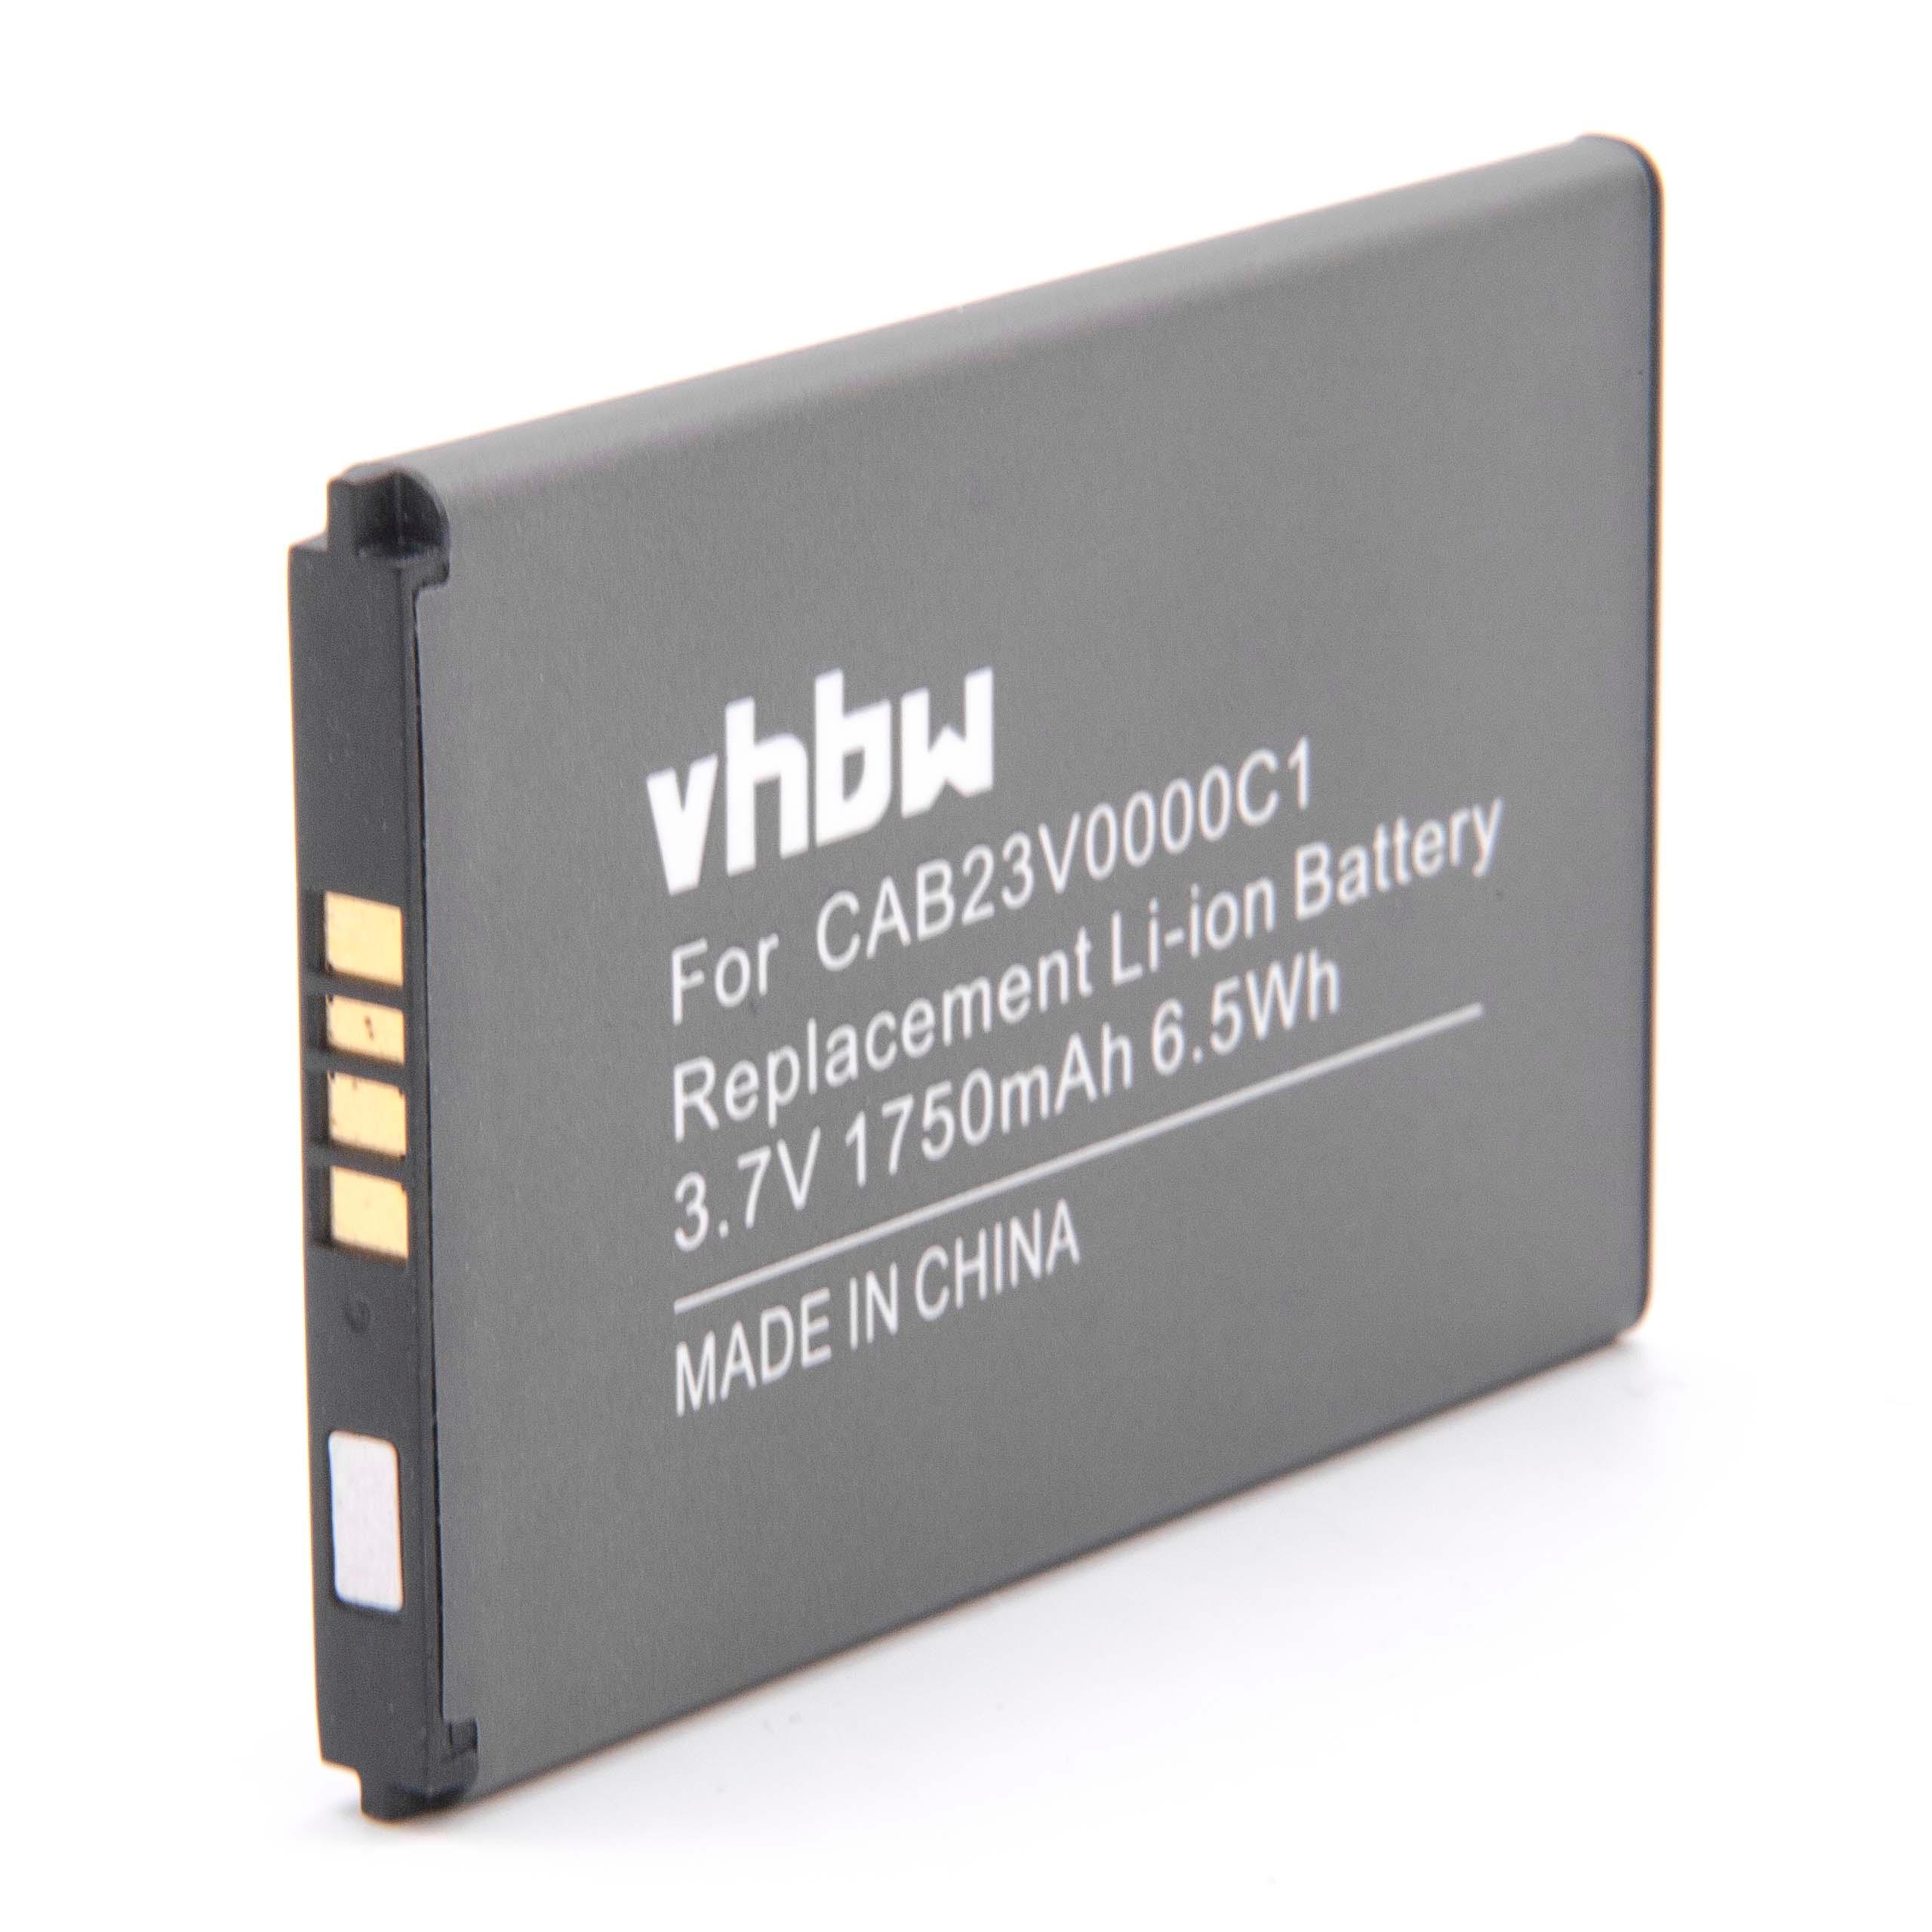 Batterie remplace Alcatel CAB23V0000C1 pour routeur modem - 1750mAh 3,7V Li-ion